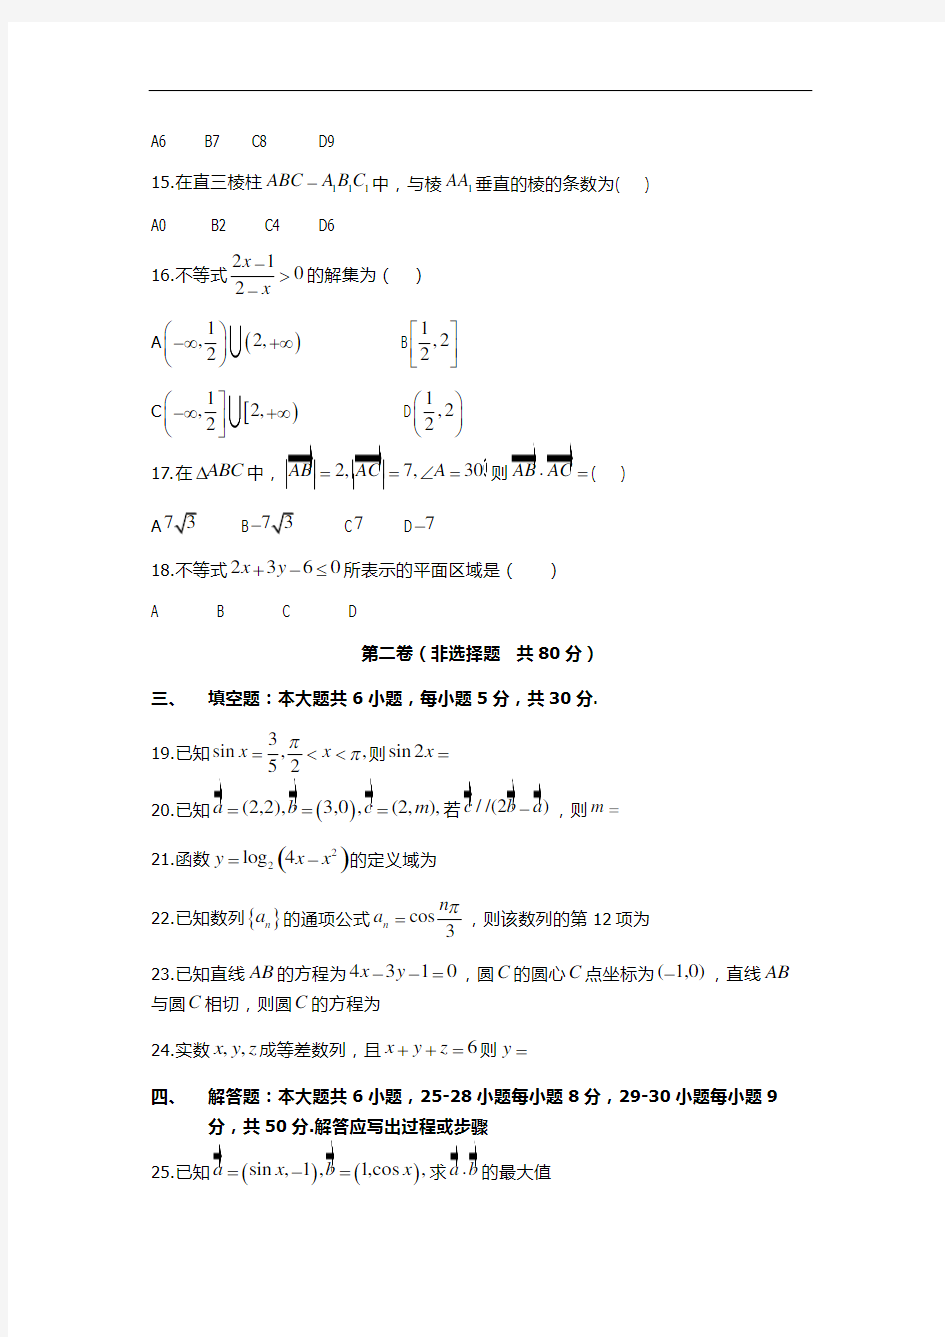 2014江西三校生高考数学模拟试题(12年)